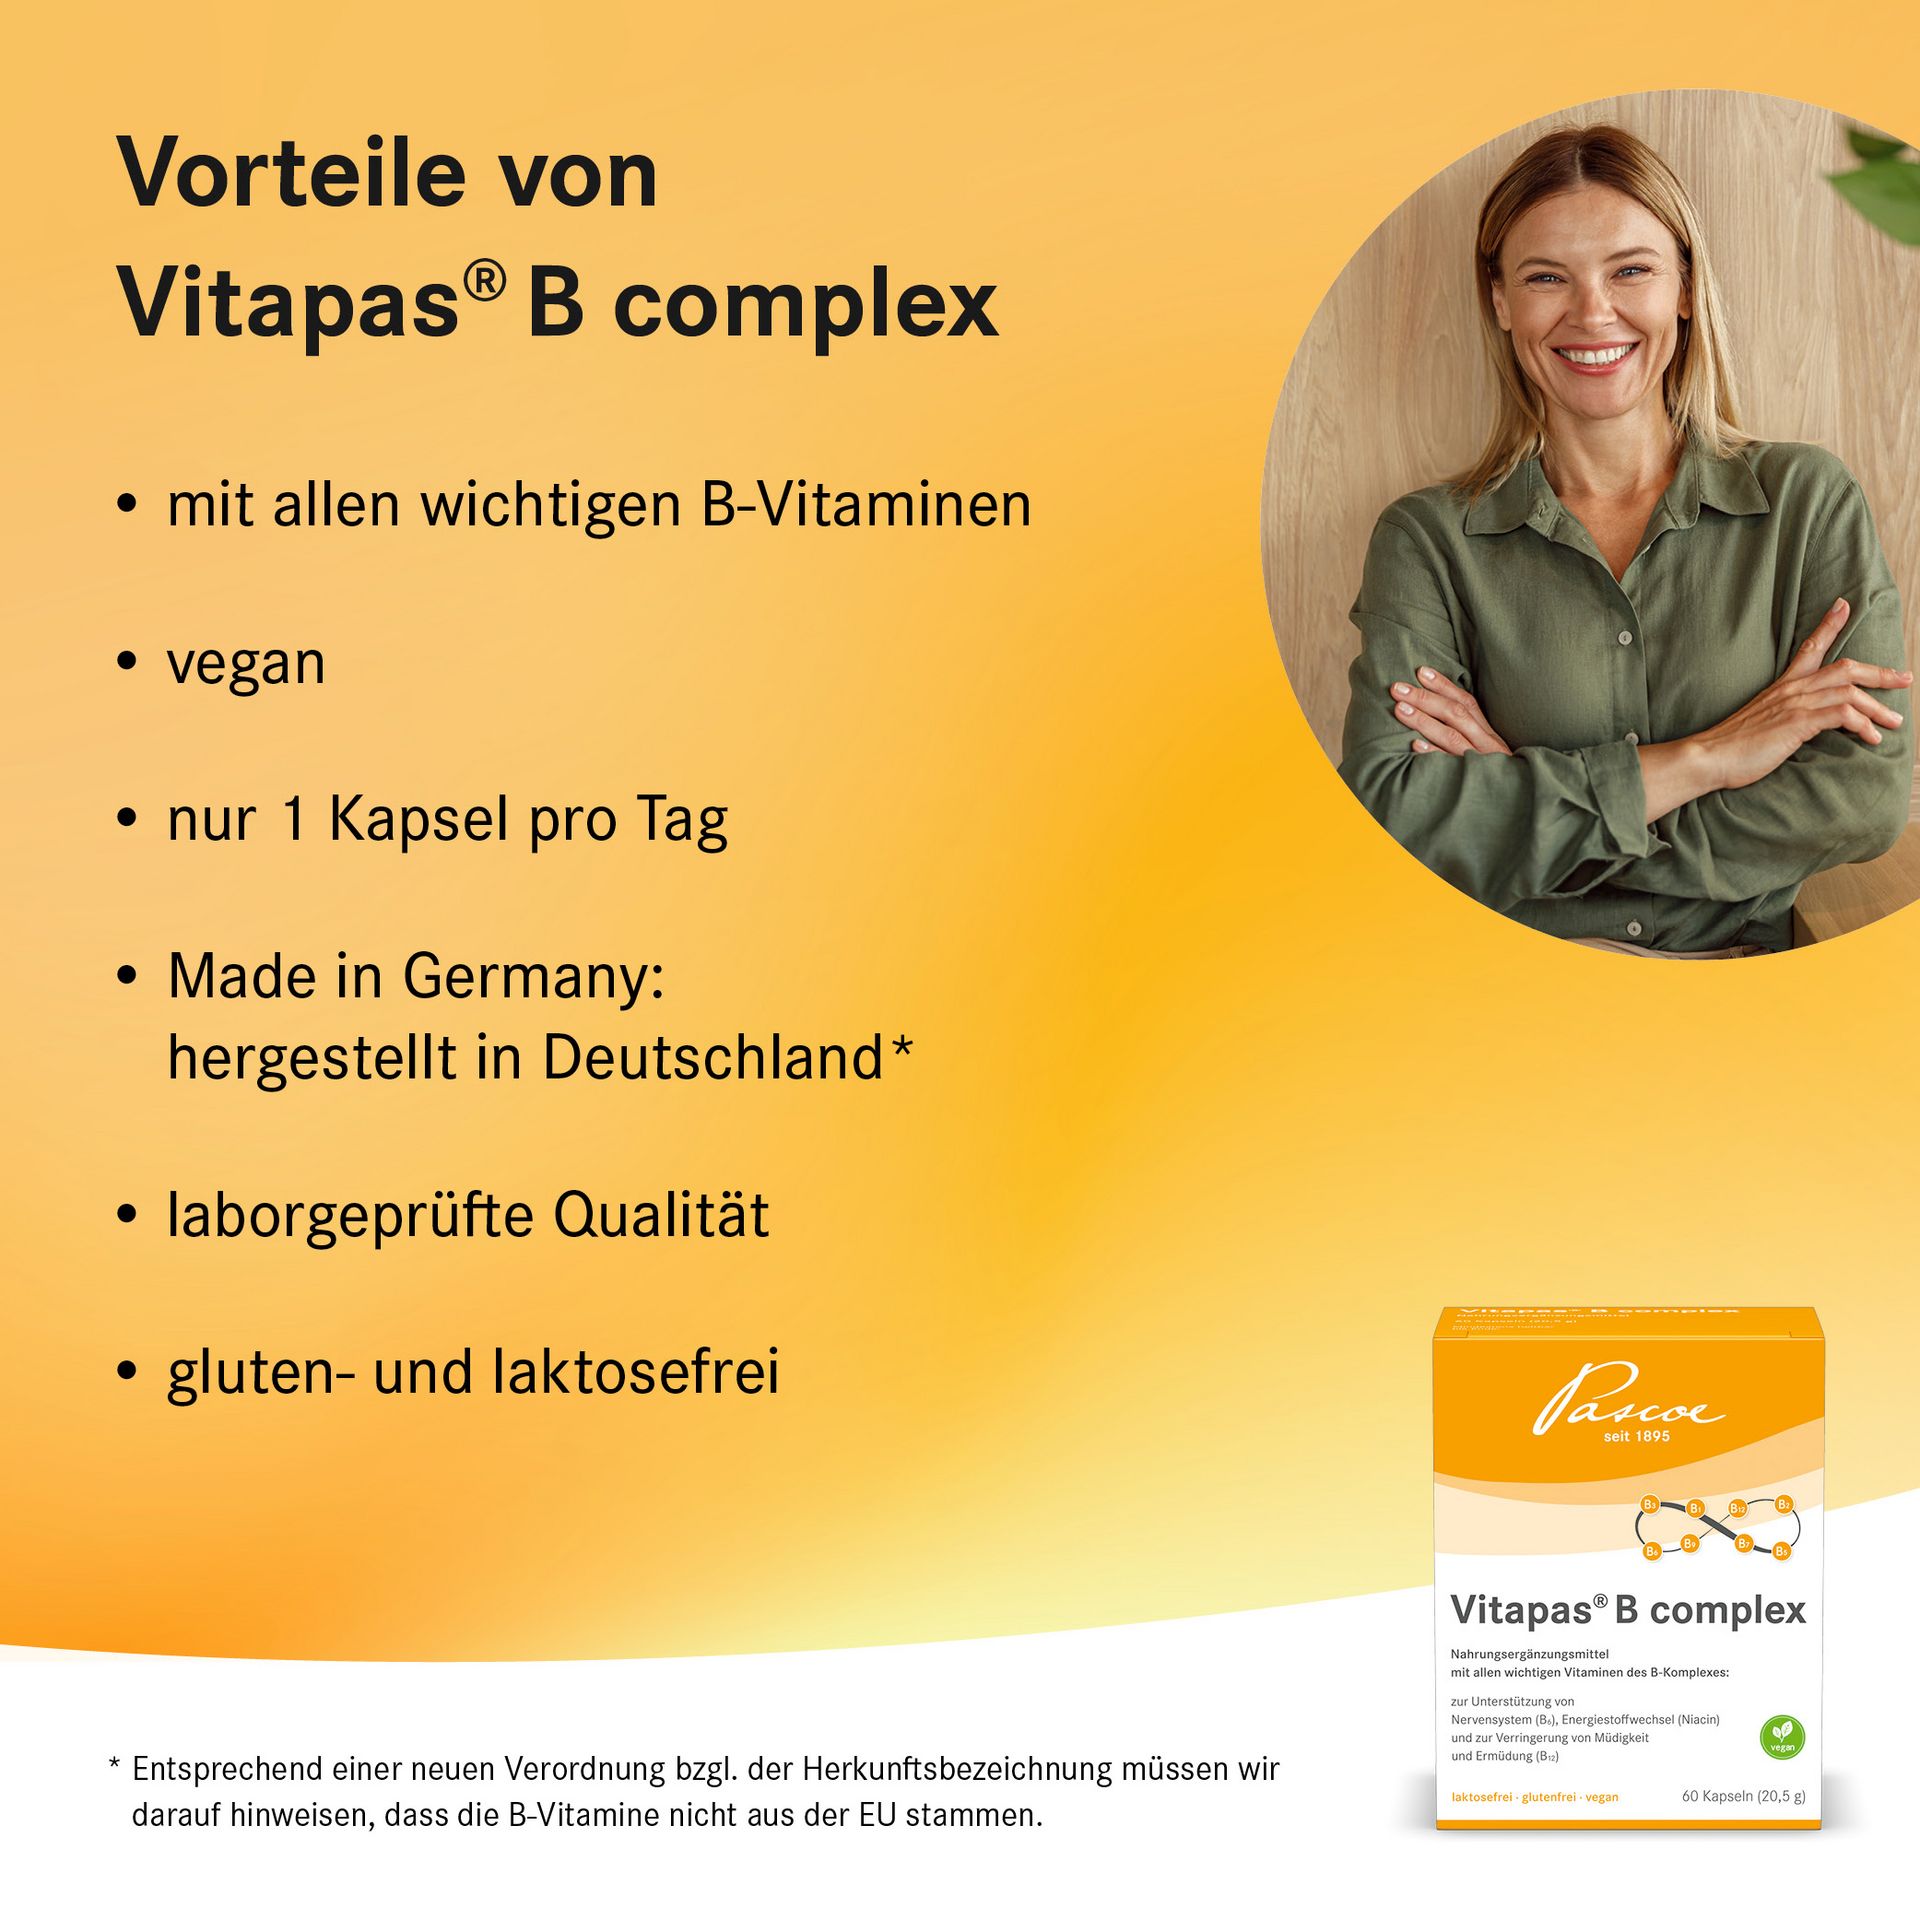 Auflistung der Vorteile von Vitapas B complex mit KeyVisual